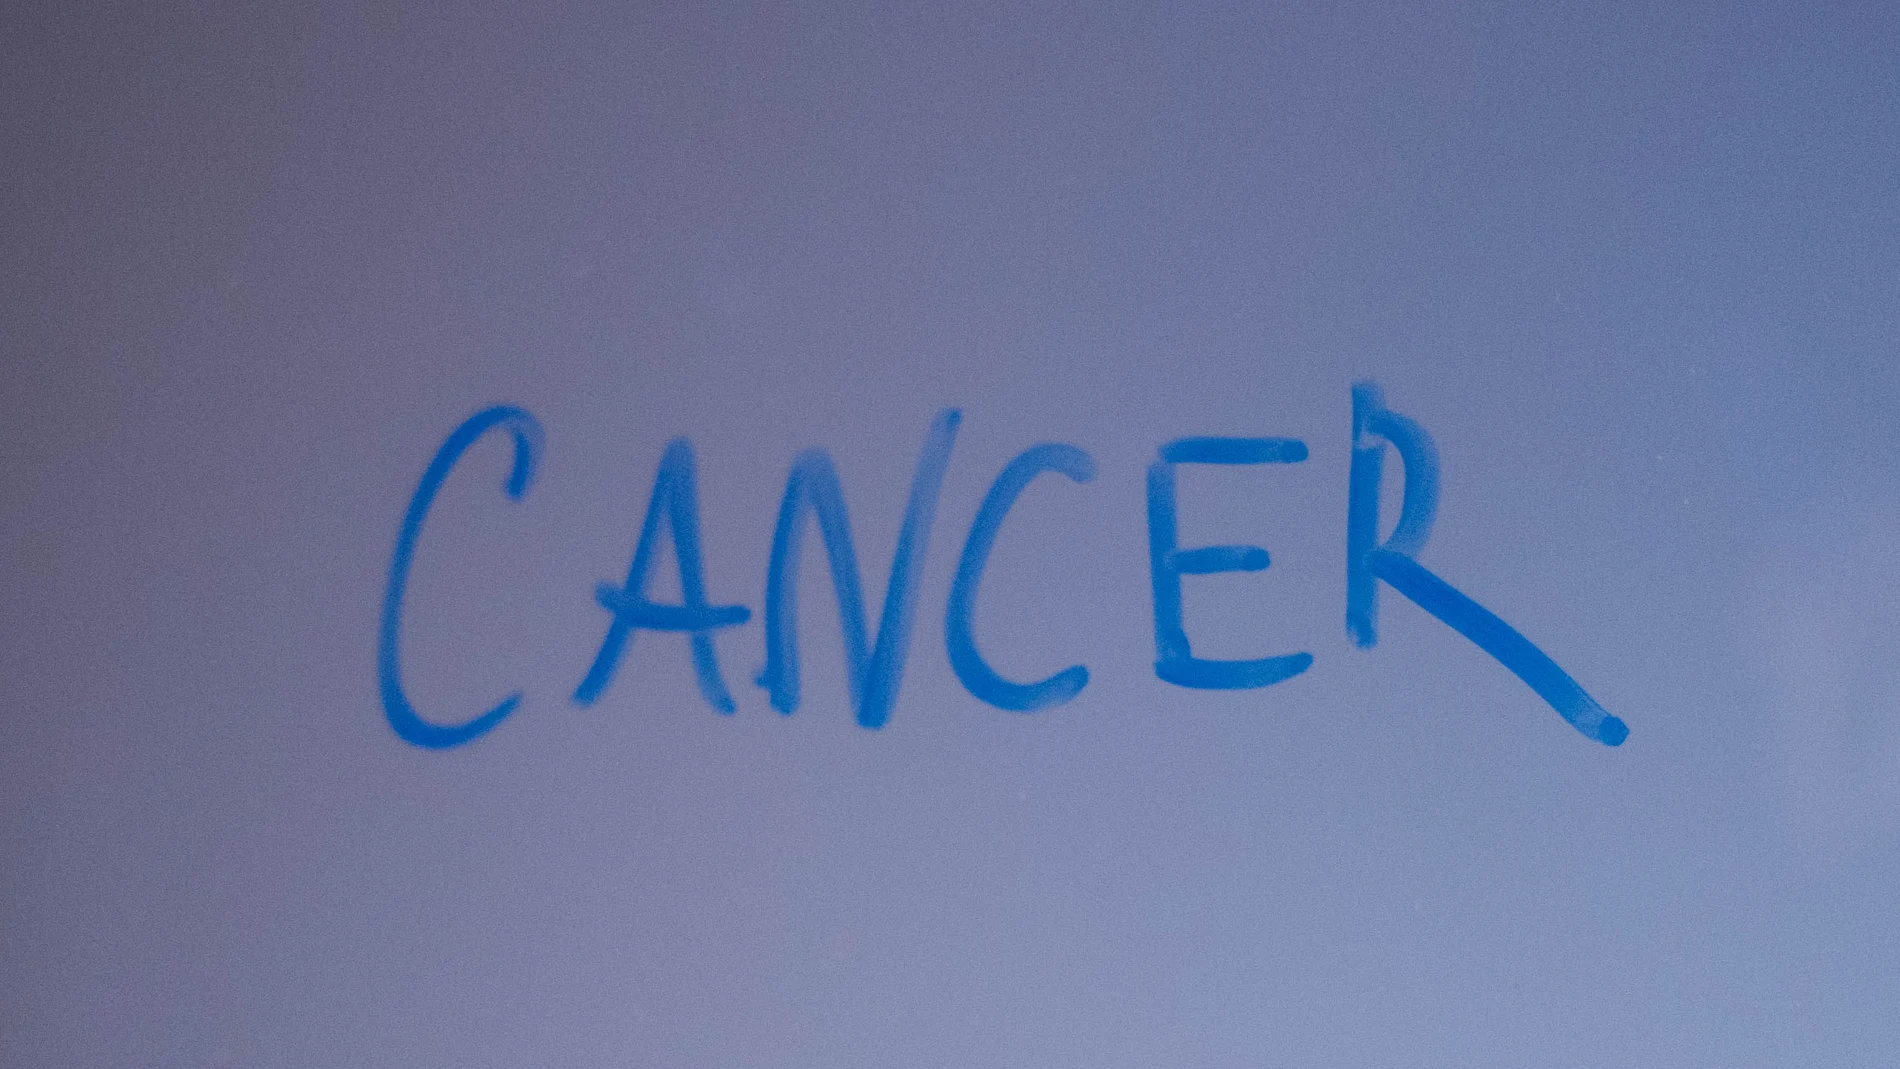 Cartel con la palabra cáncer